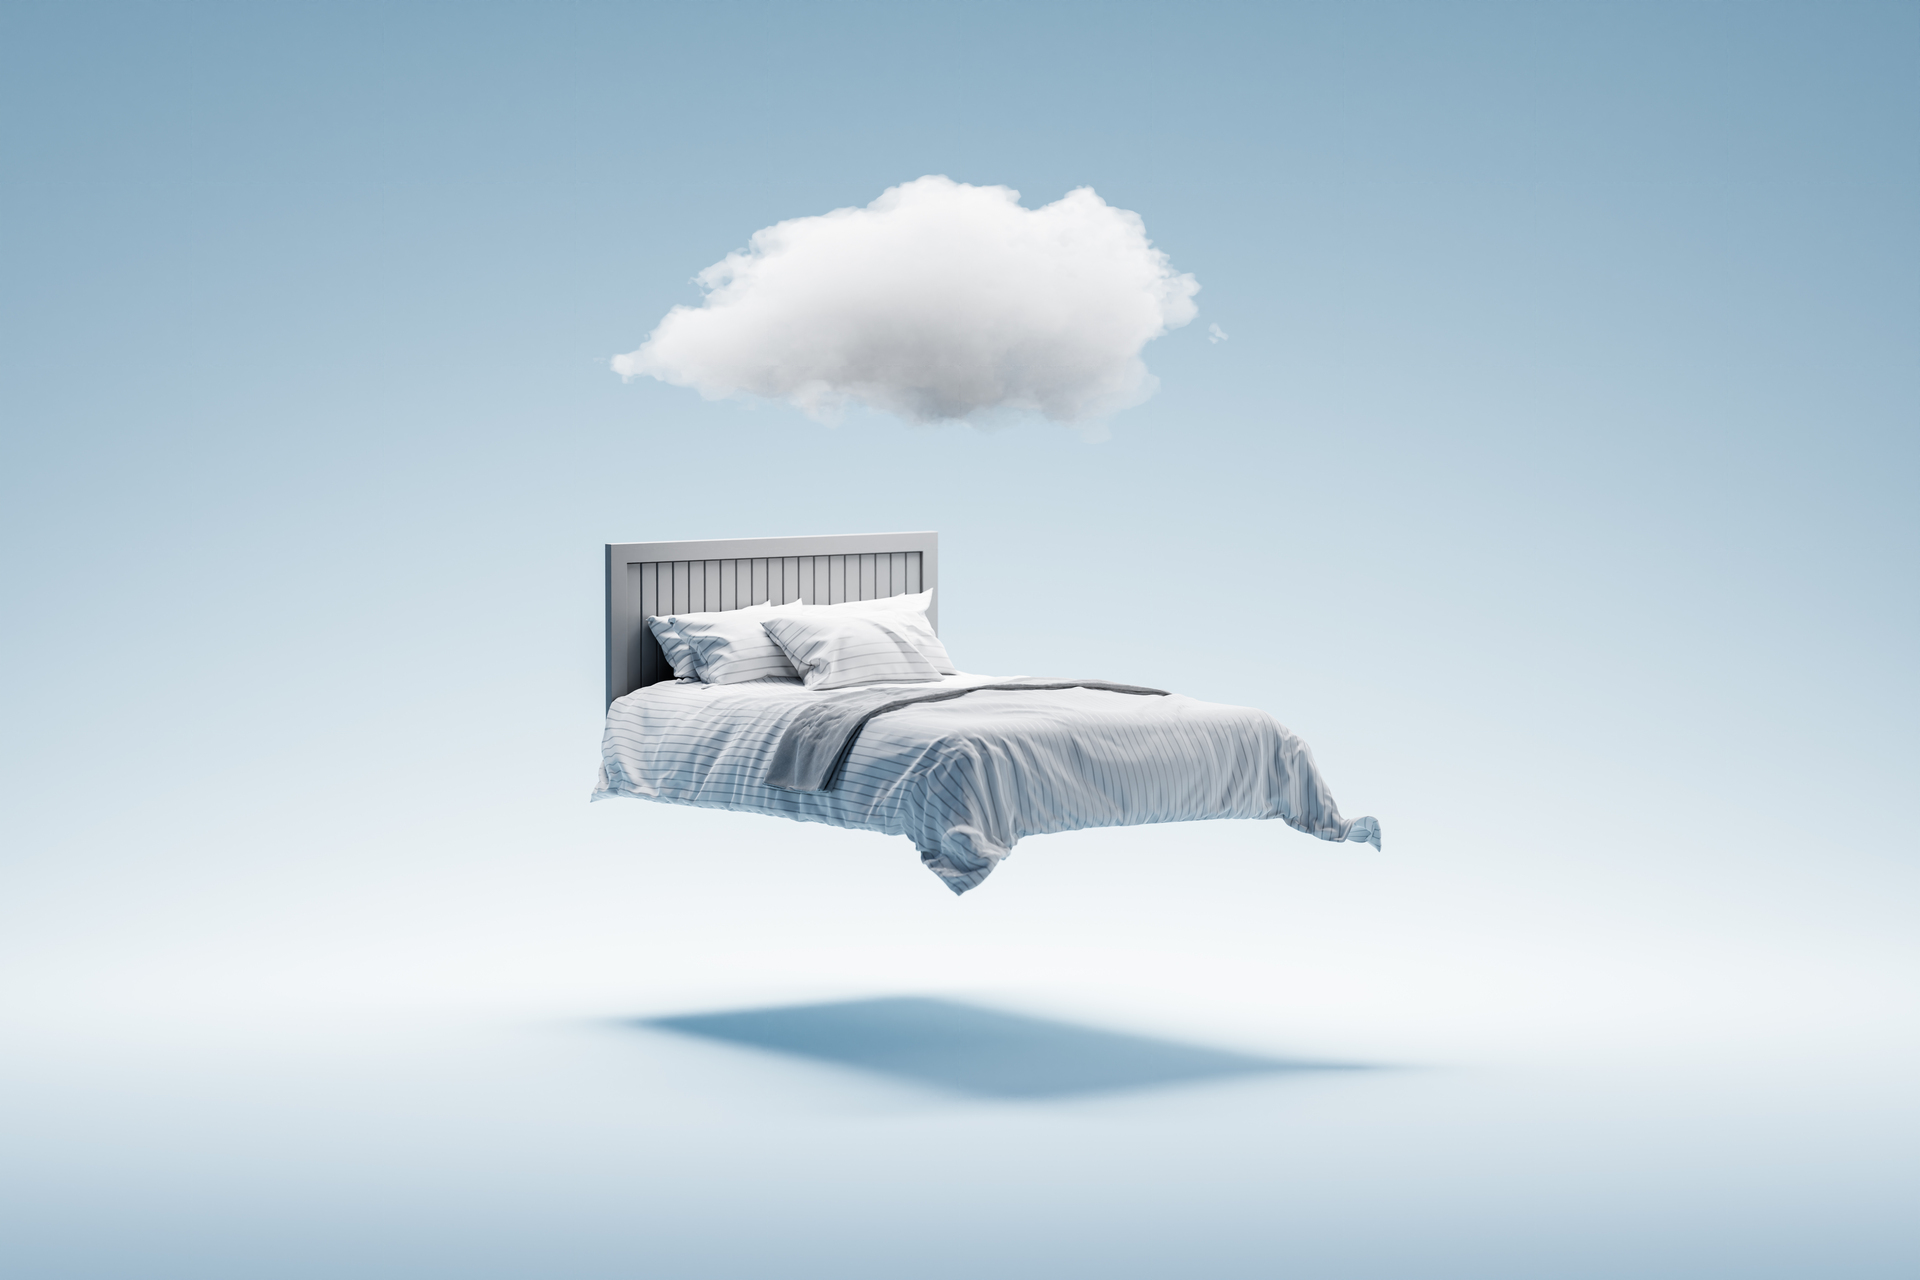 Normalmente mientras dormimos, el flujo de aire entra y sale de la vía aérea superior en forma rítmica. En las personas que tienen apneas del sueño, la respiración se ve interrumpida o disminuida en forma periódica